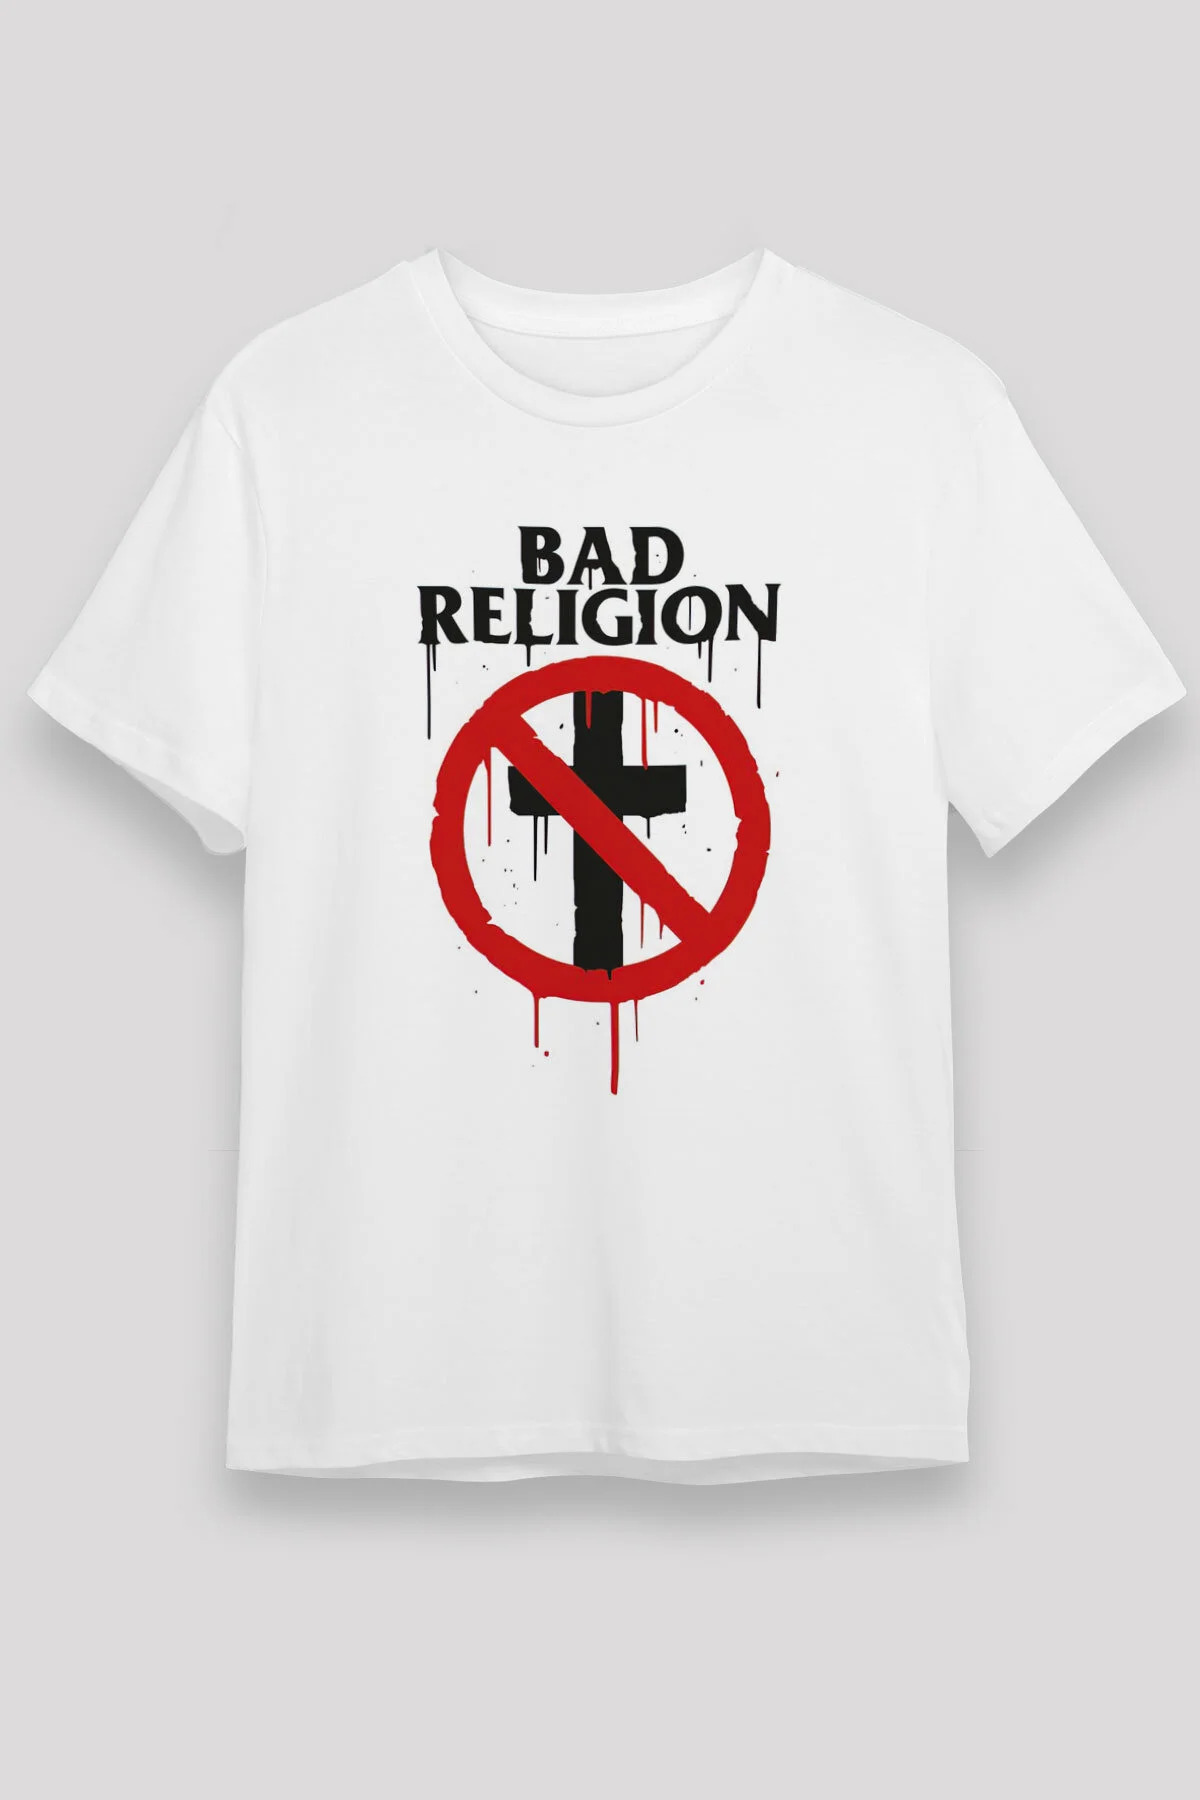 Bad Religion ,Music Band ,Unisex Tshirt 26